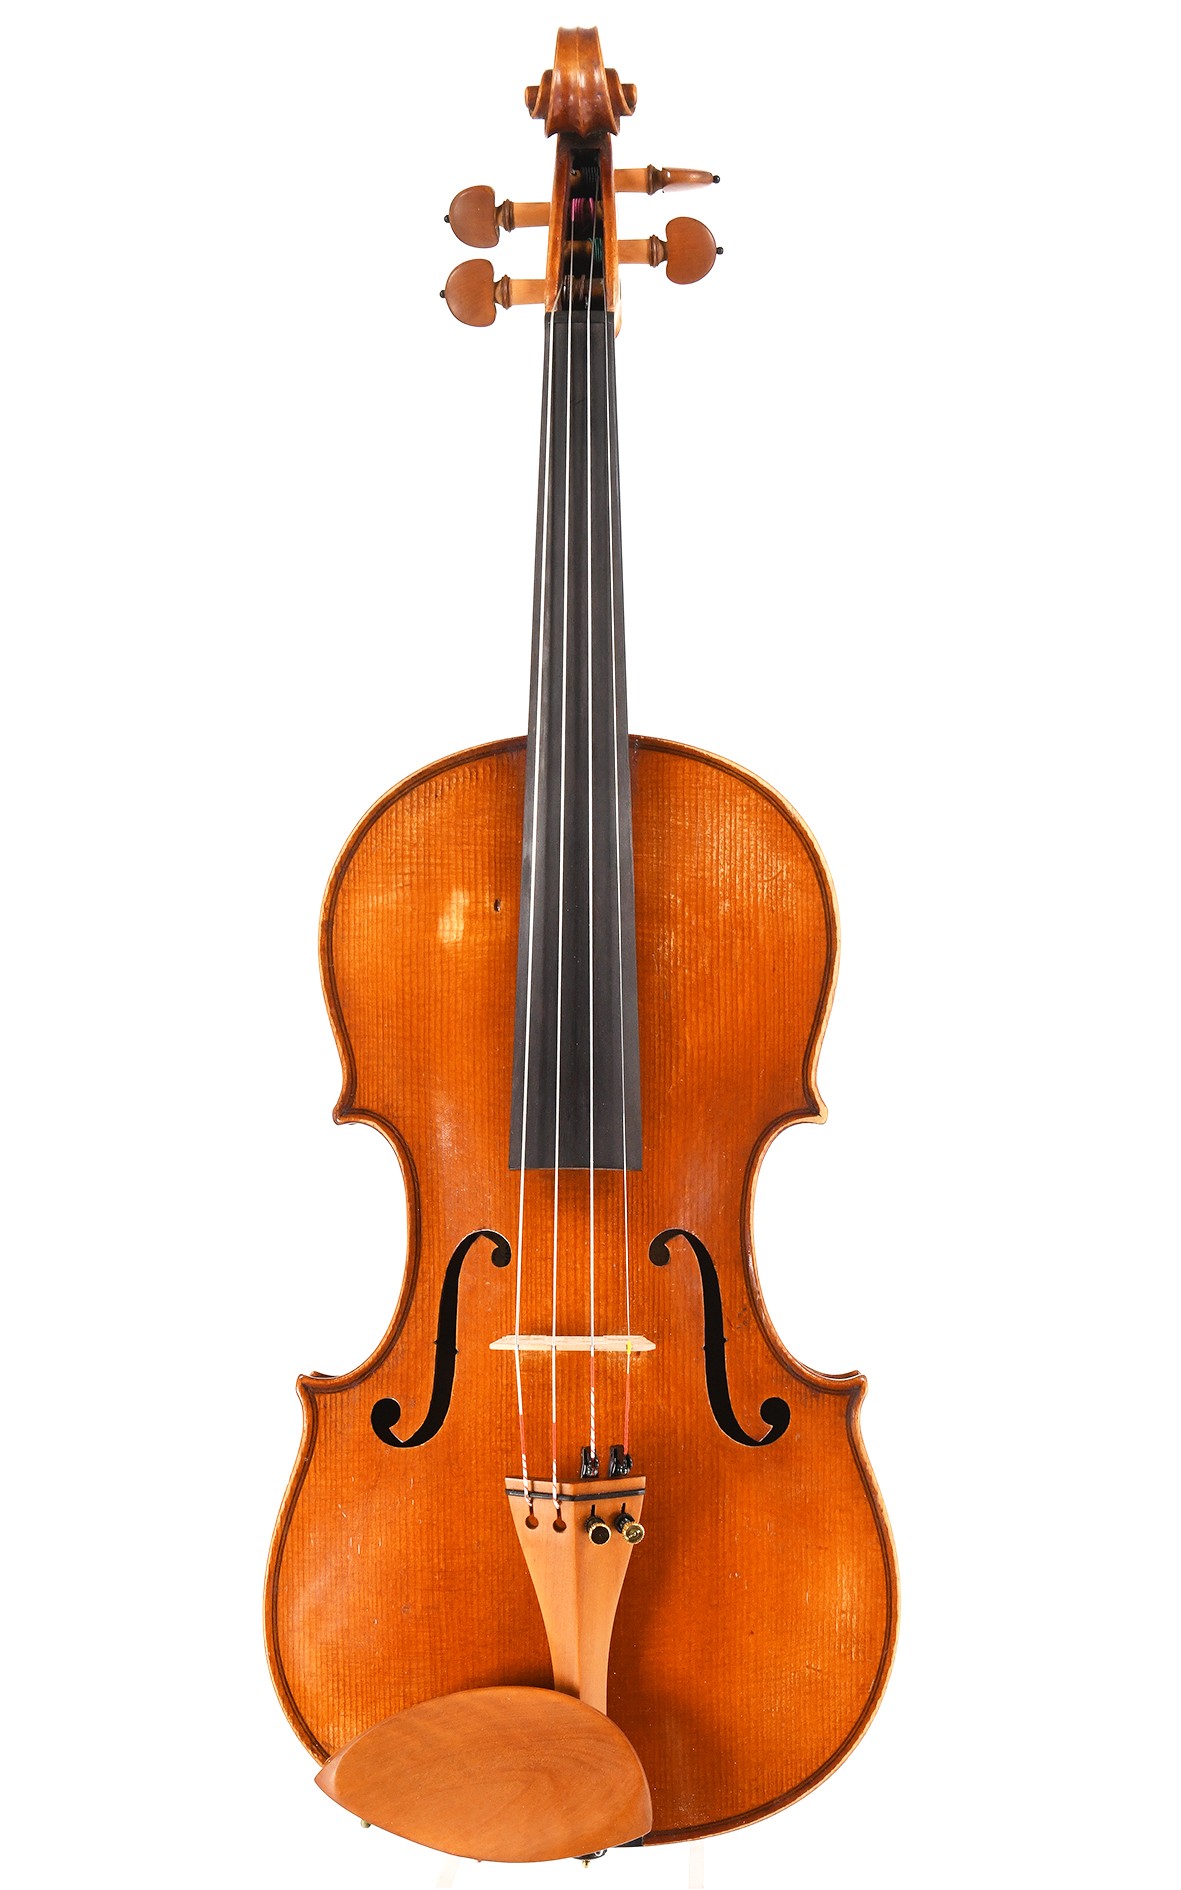 Ancien violon de maître saxon, circa 1900, estampillé I*G*F